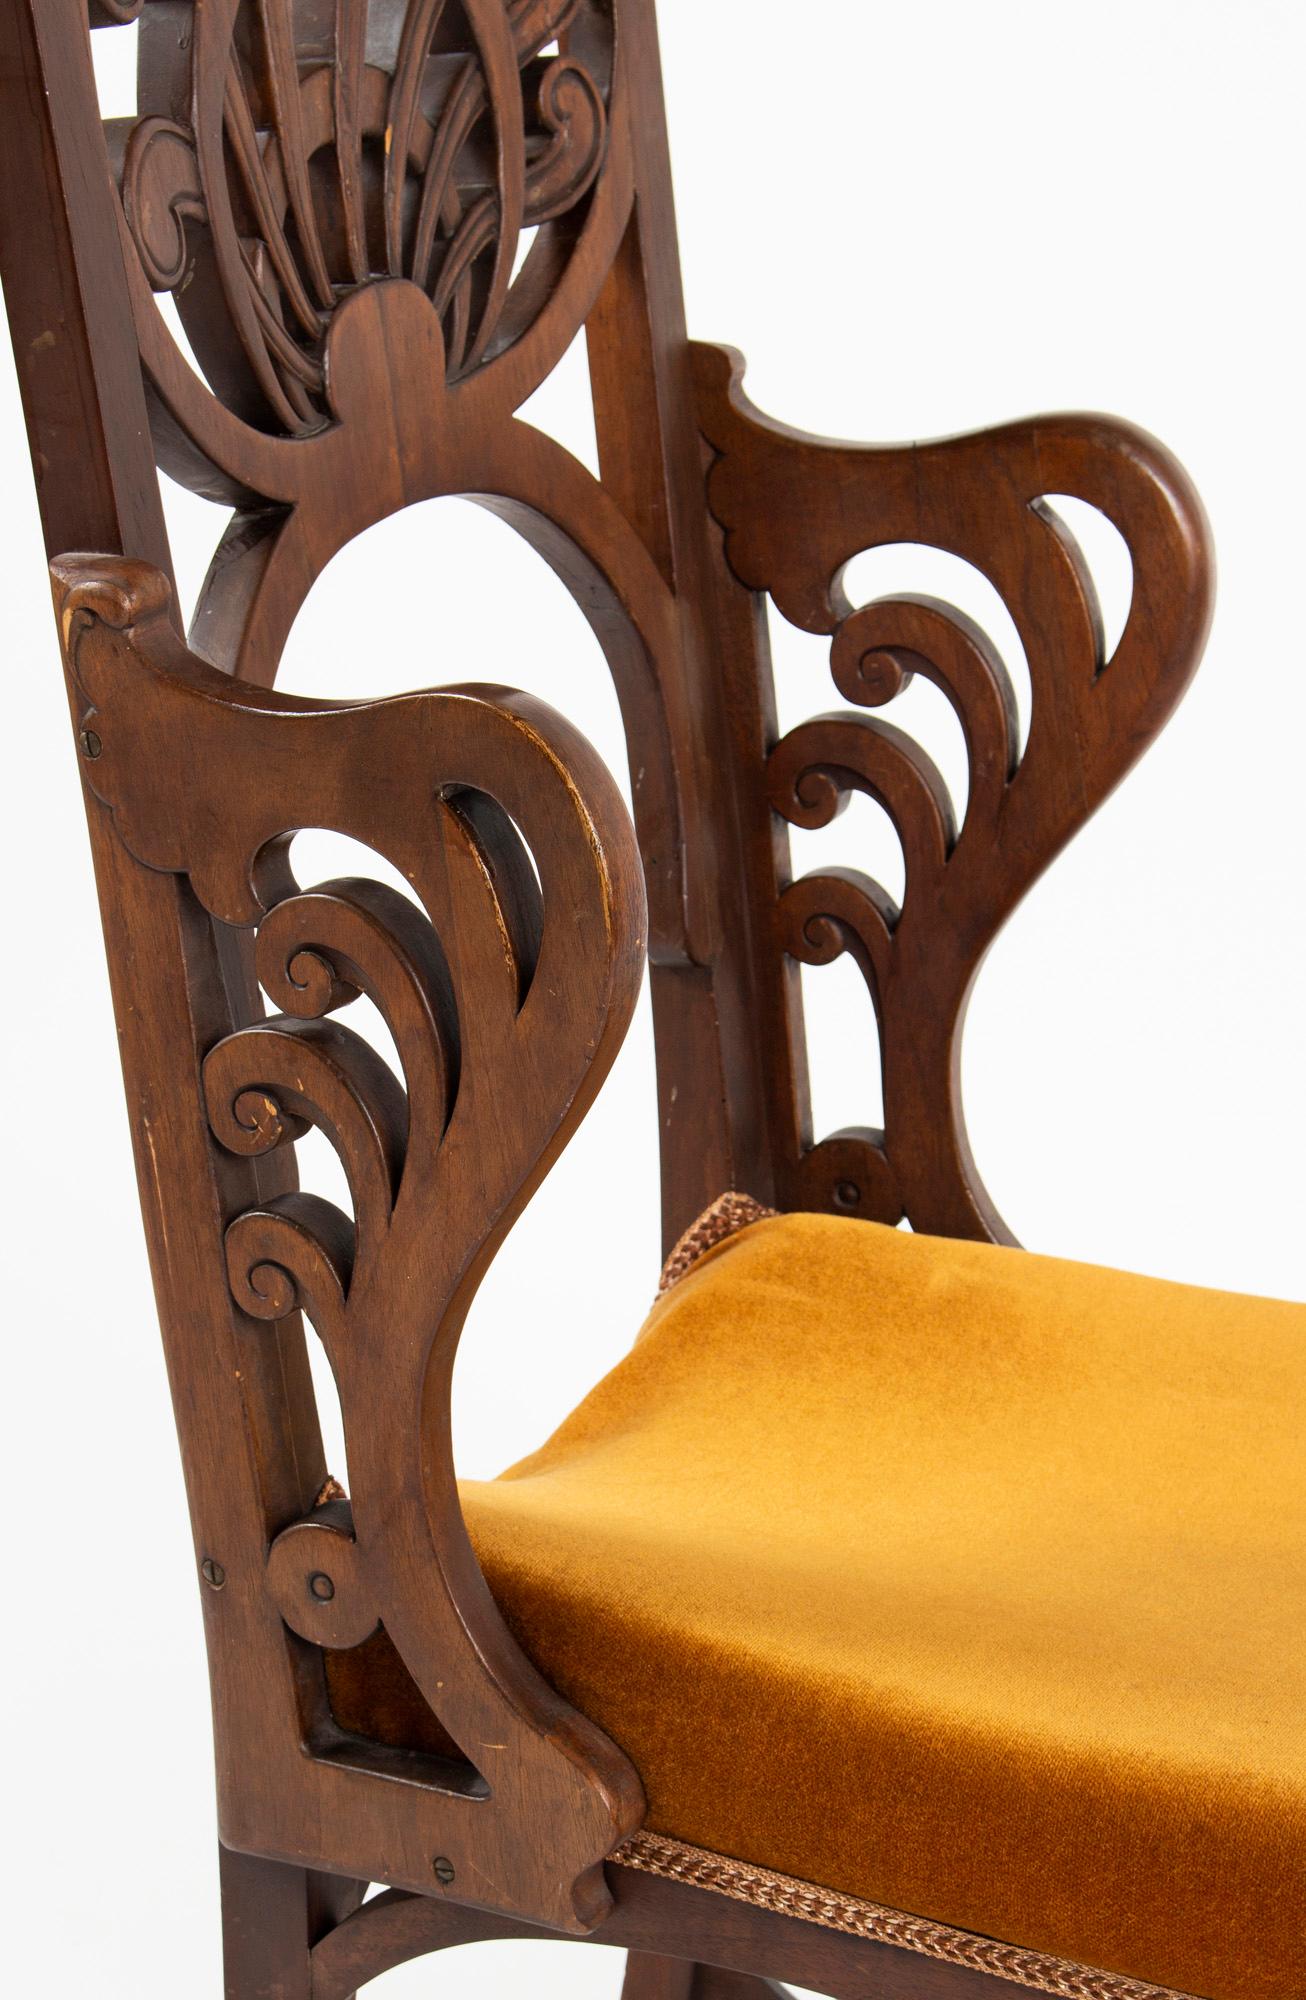 Early 20th Century Unique Rippl-Rónai József Art Nouveau Chairs, circa 1900s For Sale